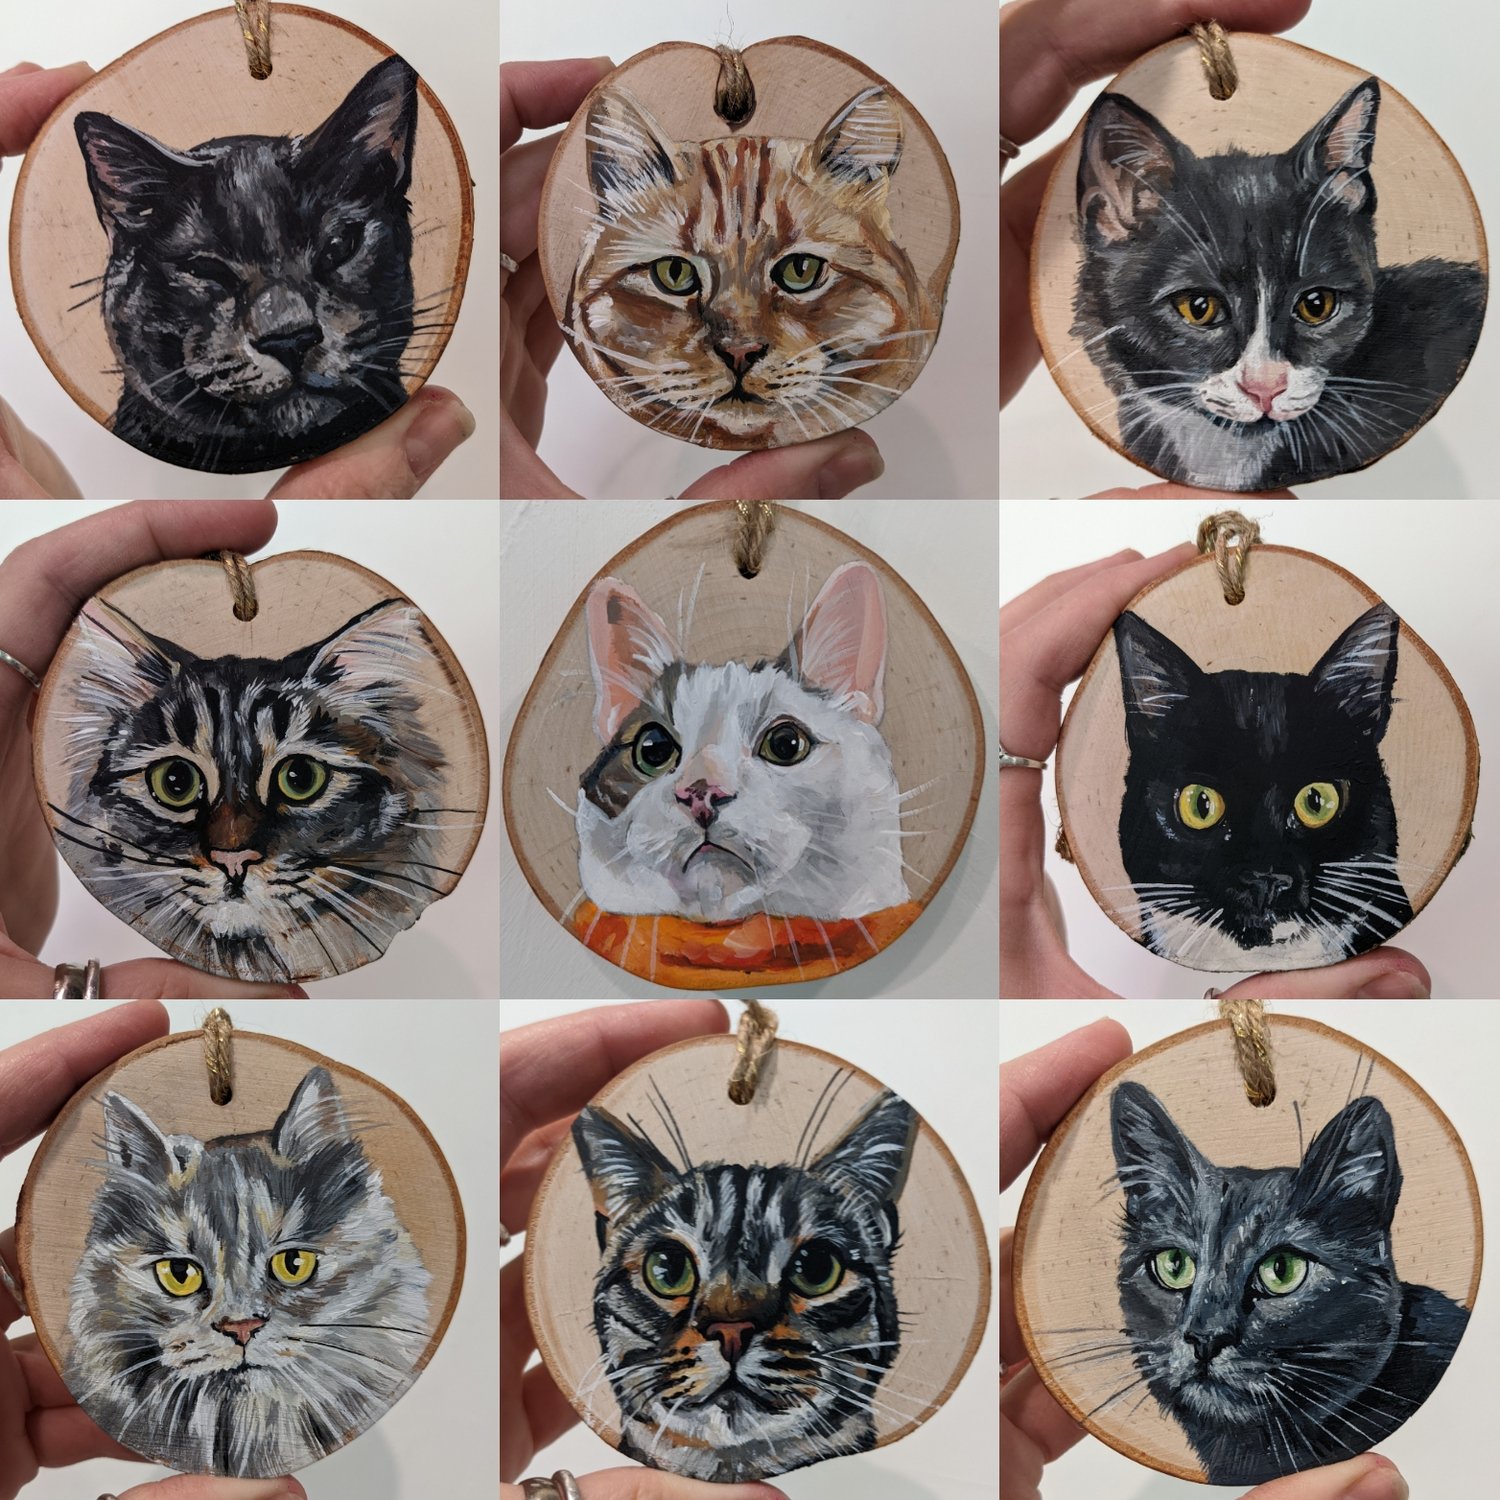 Pet Portrait Ornaments 